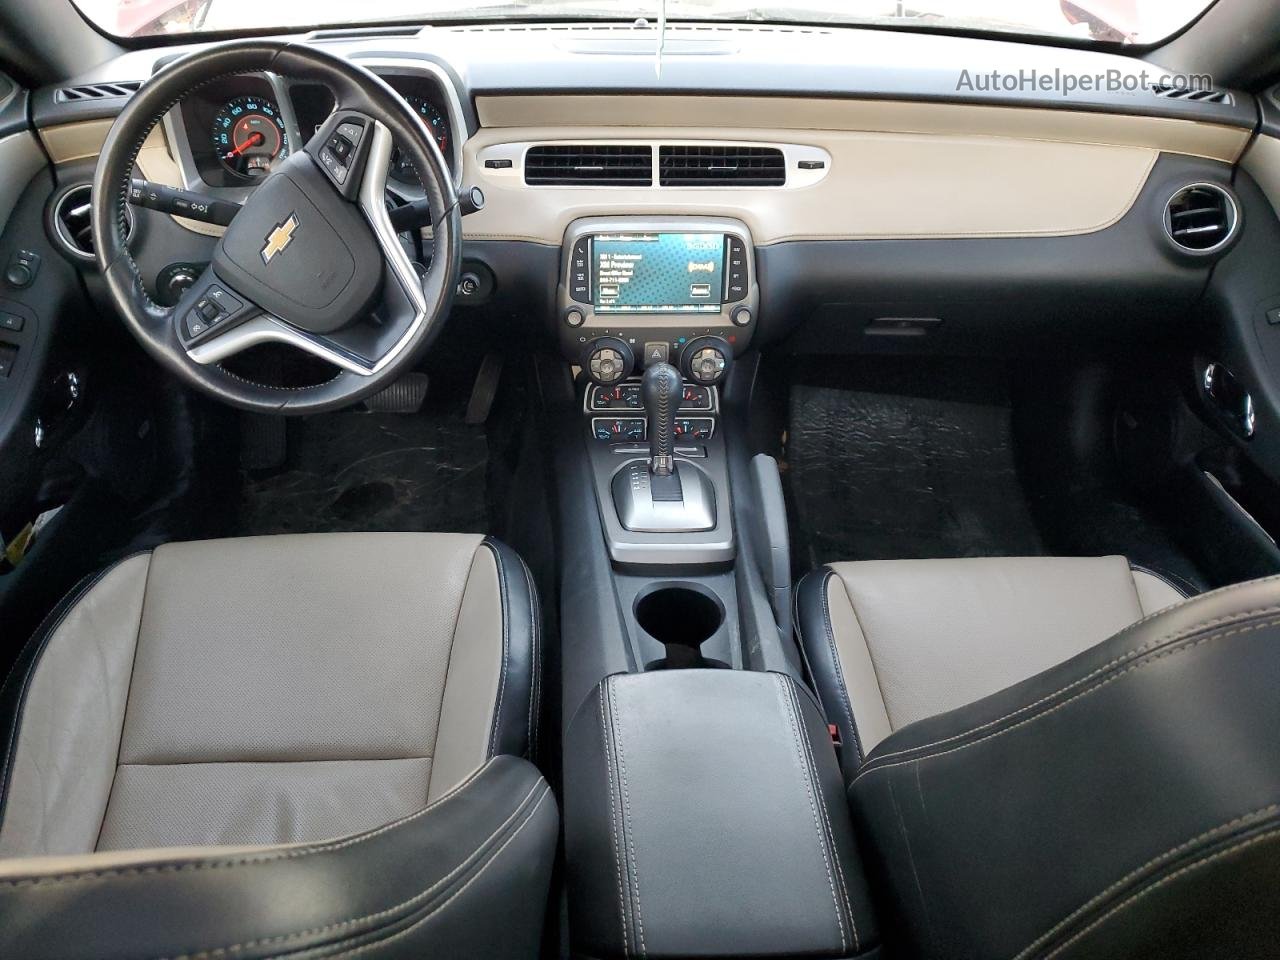 2014 Chevrolet Camaro Lt Темно-бордовый vin: 2G1FC1E33E9311325